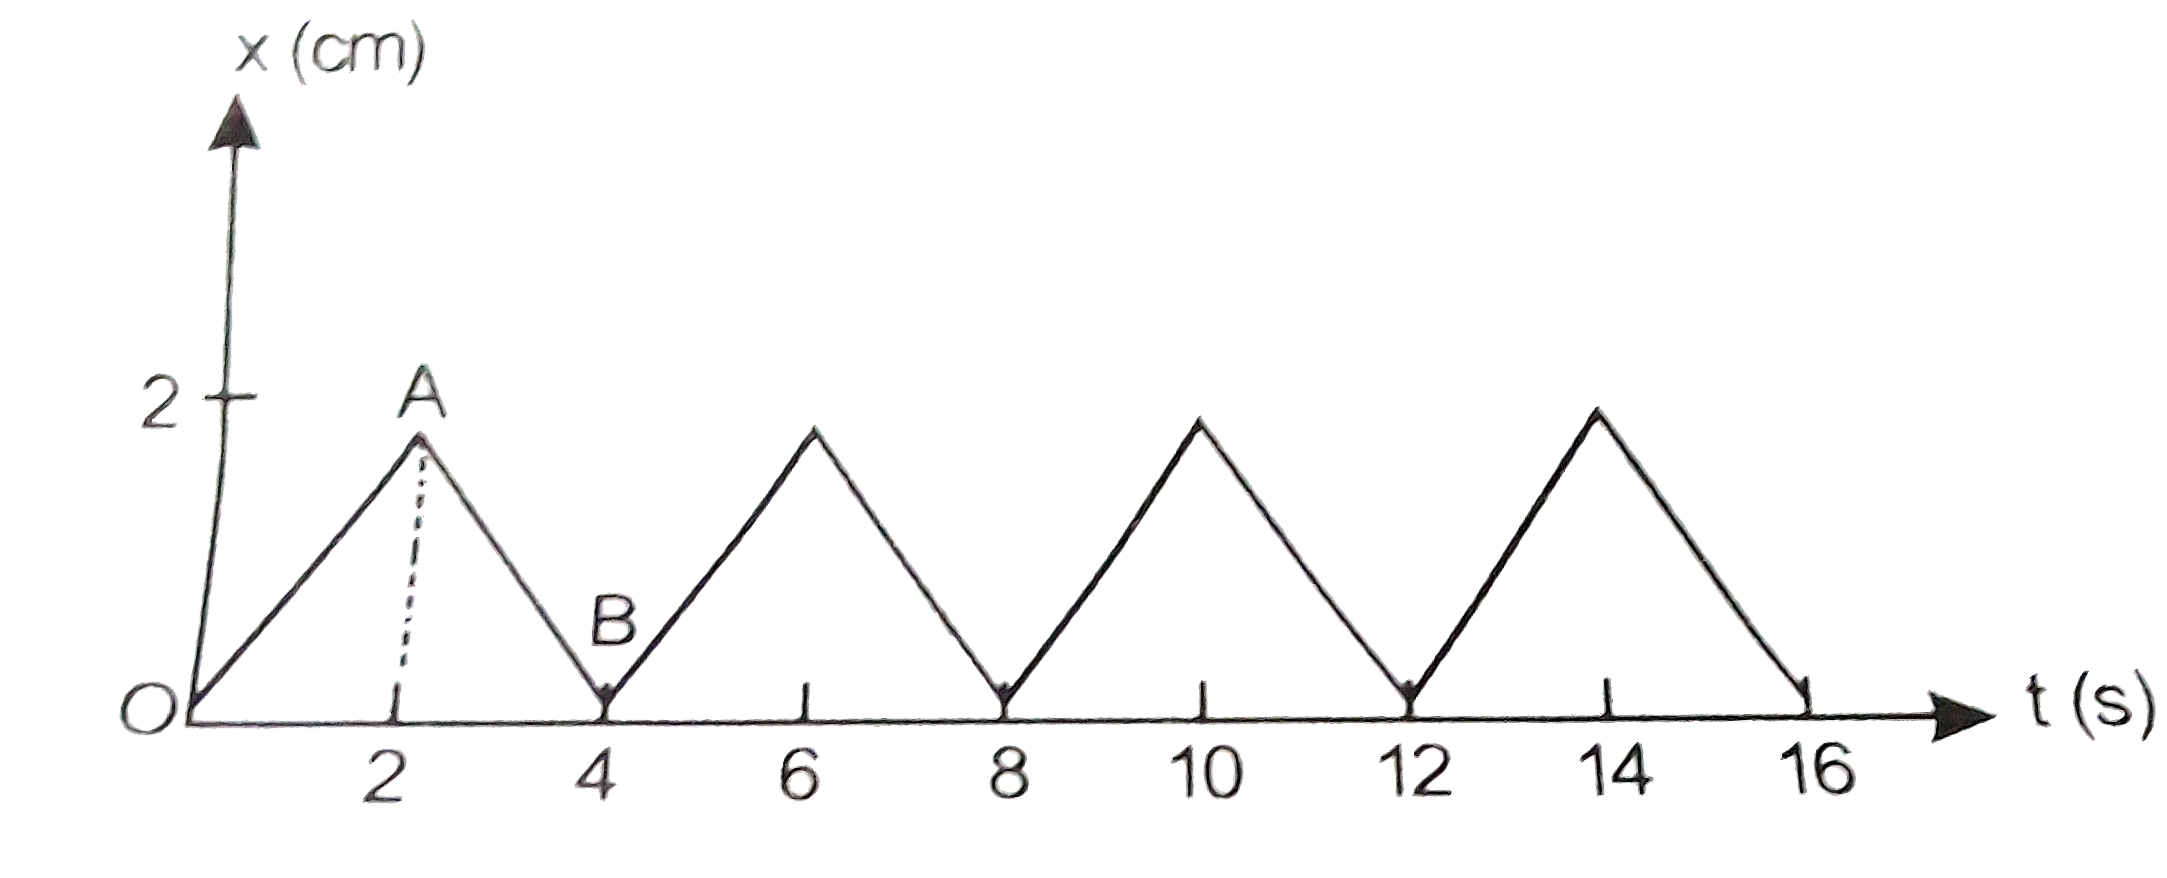 चित्र में 0.04 किग्रा संहति के किसी पिण्ड का स्थिति - समय ग्राफ दर्शाया गया हैं । इस गति के लिए कोई उचित भौतिक संदर्भ प्रस्तावित कीजिए । पिण्ड व्दारा प्राप्त दो क्रमिक आवेगों के बीच समय अन्तराल क्या हैं प्रत्येक आवेग का परिमाण क्या हैं  ?